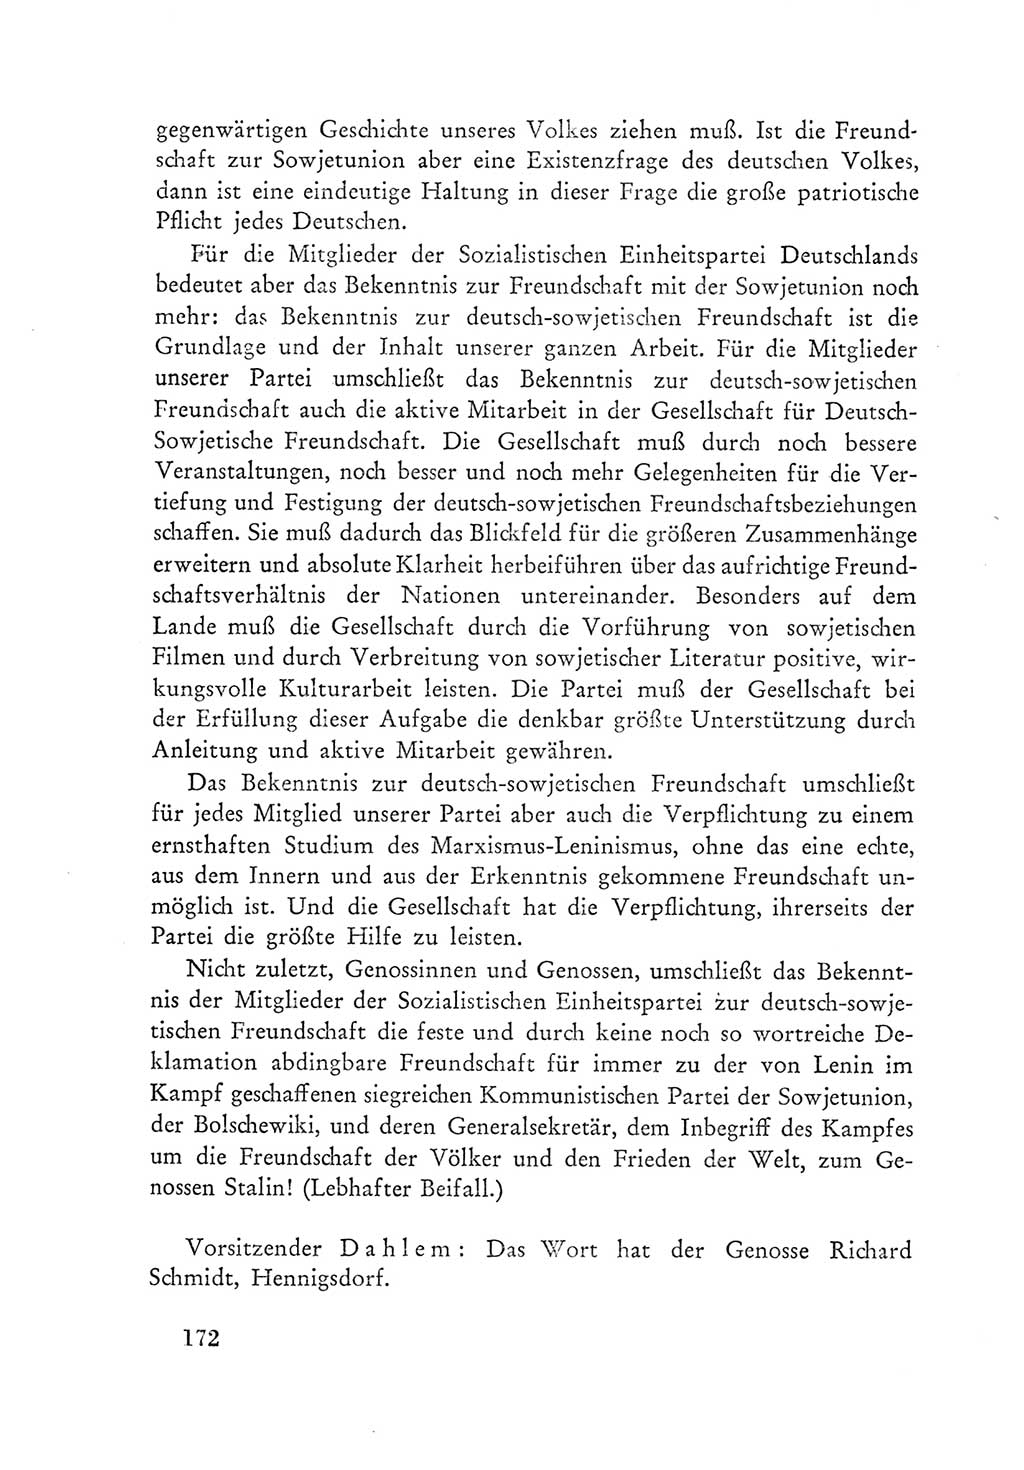 Protokoll der Verhandlungen des Ⅲ. Parteitages der Sozialistischen Einheitspartei Deutschlands (SED) [Deutsche Demokratische Republik (DDR)] 1950, Band 1, Seite 172 (Prot. Verh. Ⅲ. PT SED DDR 1950, Bd. 1, S. 172)